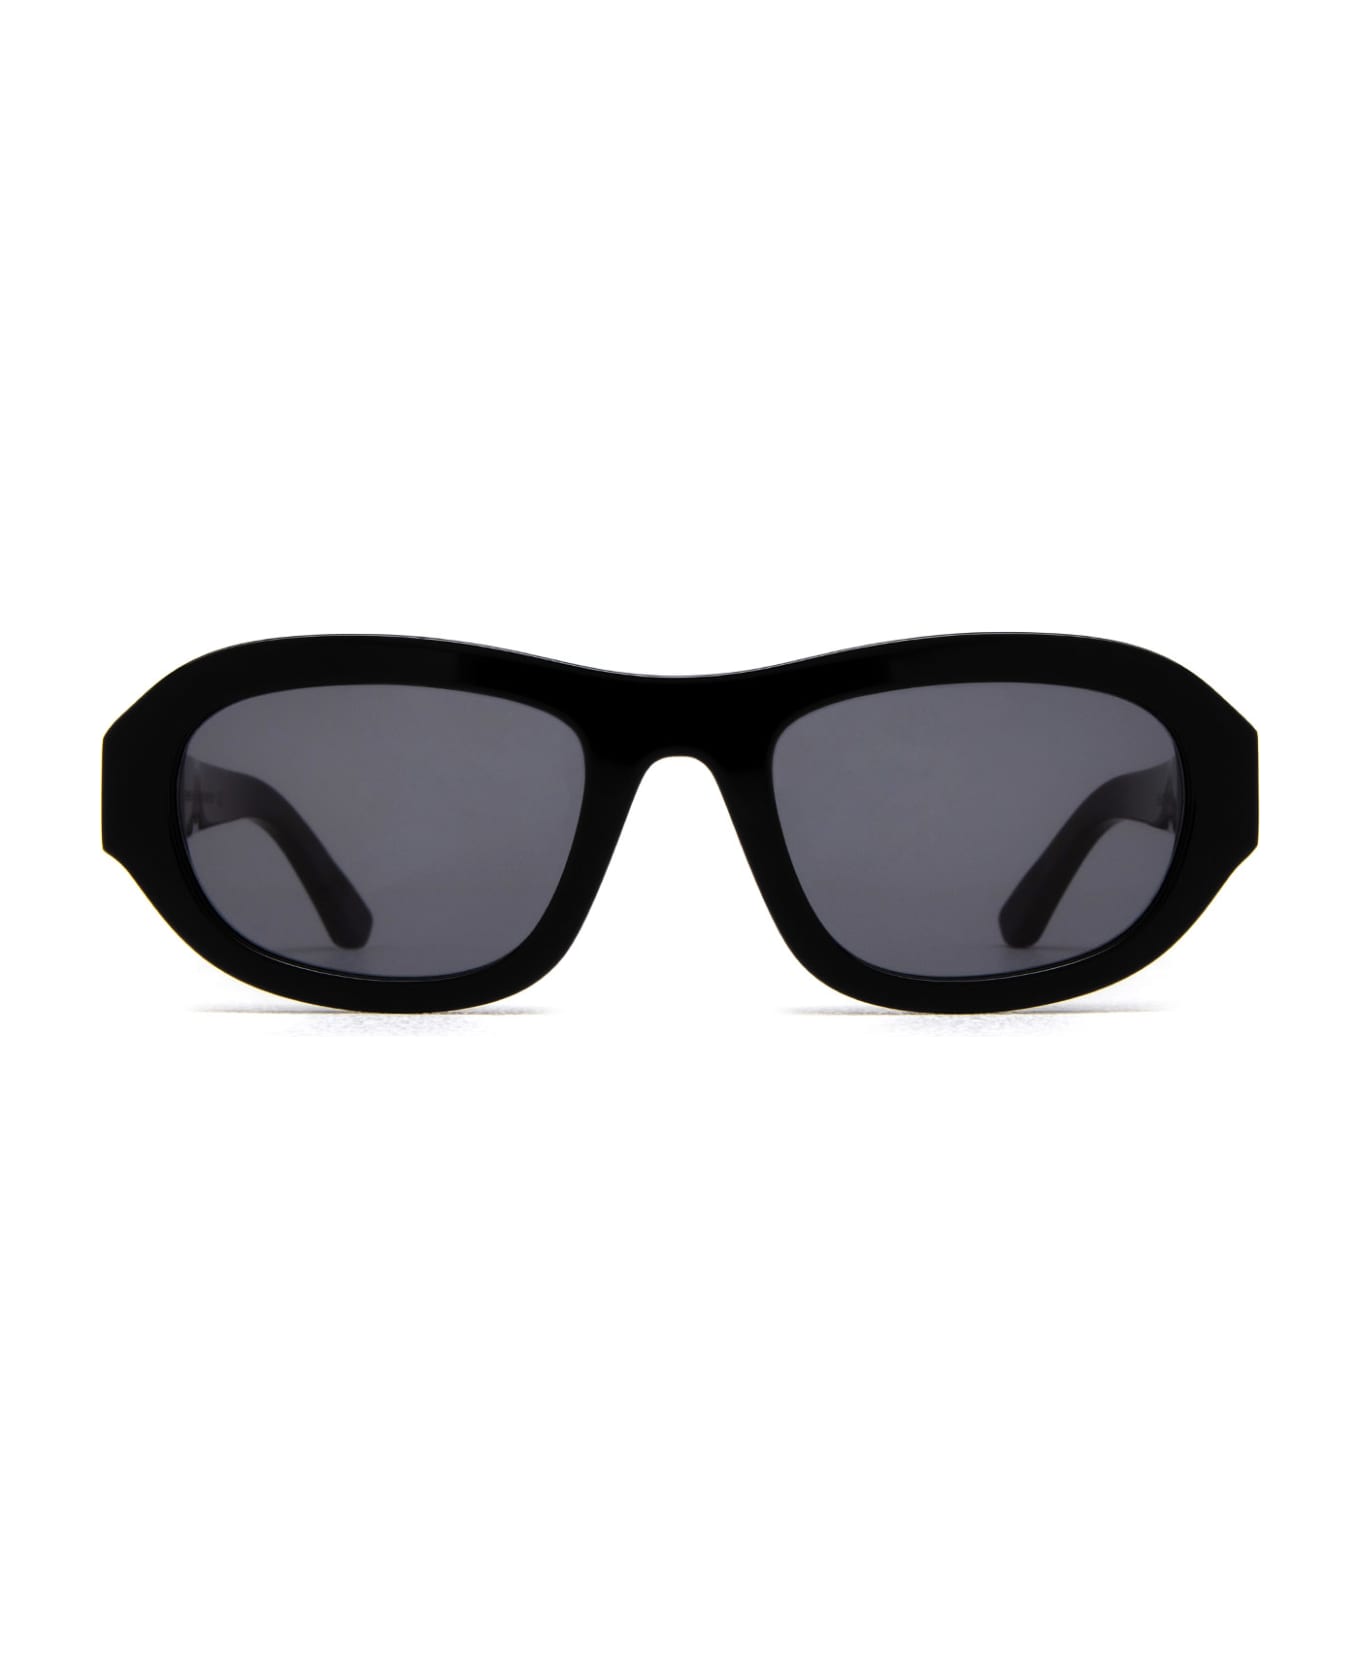 Huma Lee Black Sunglasses - BLACK サングラス